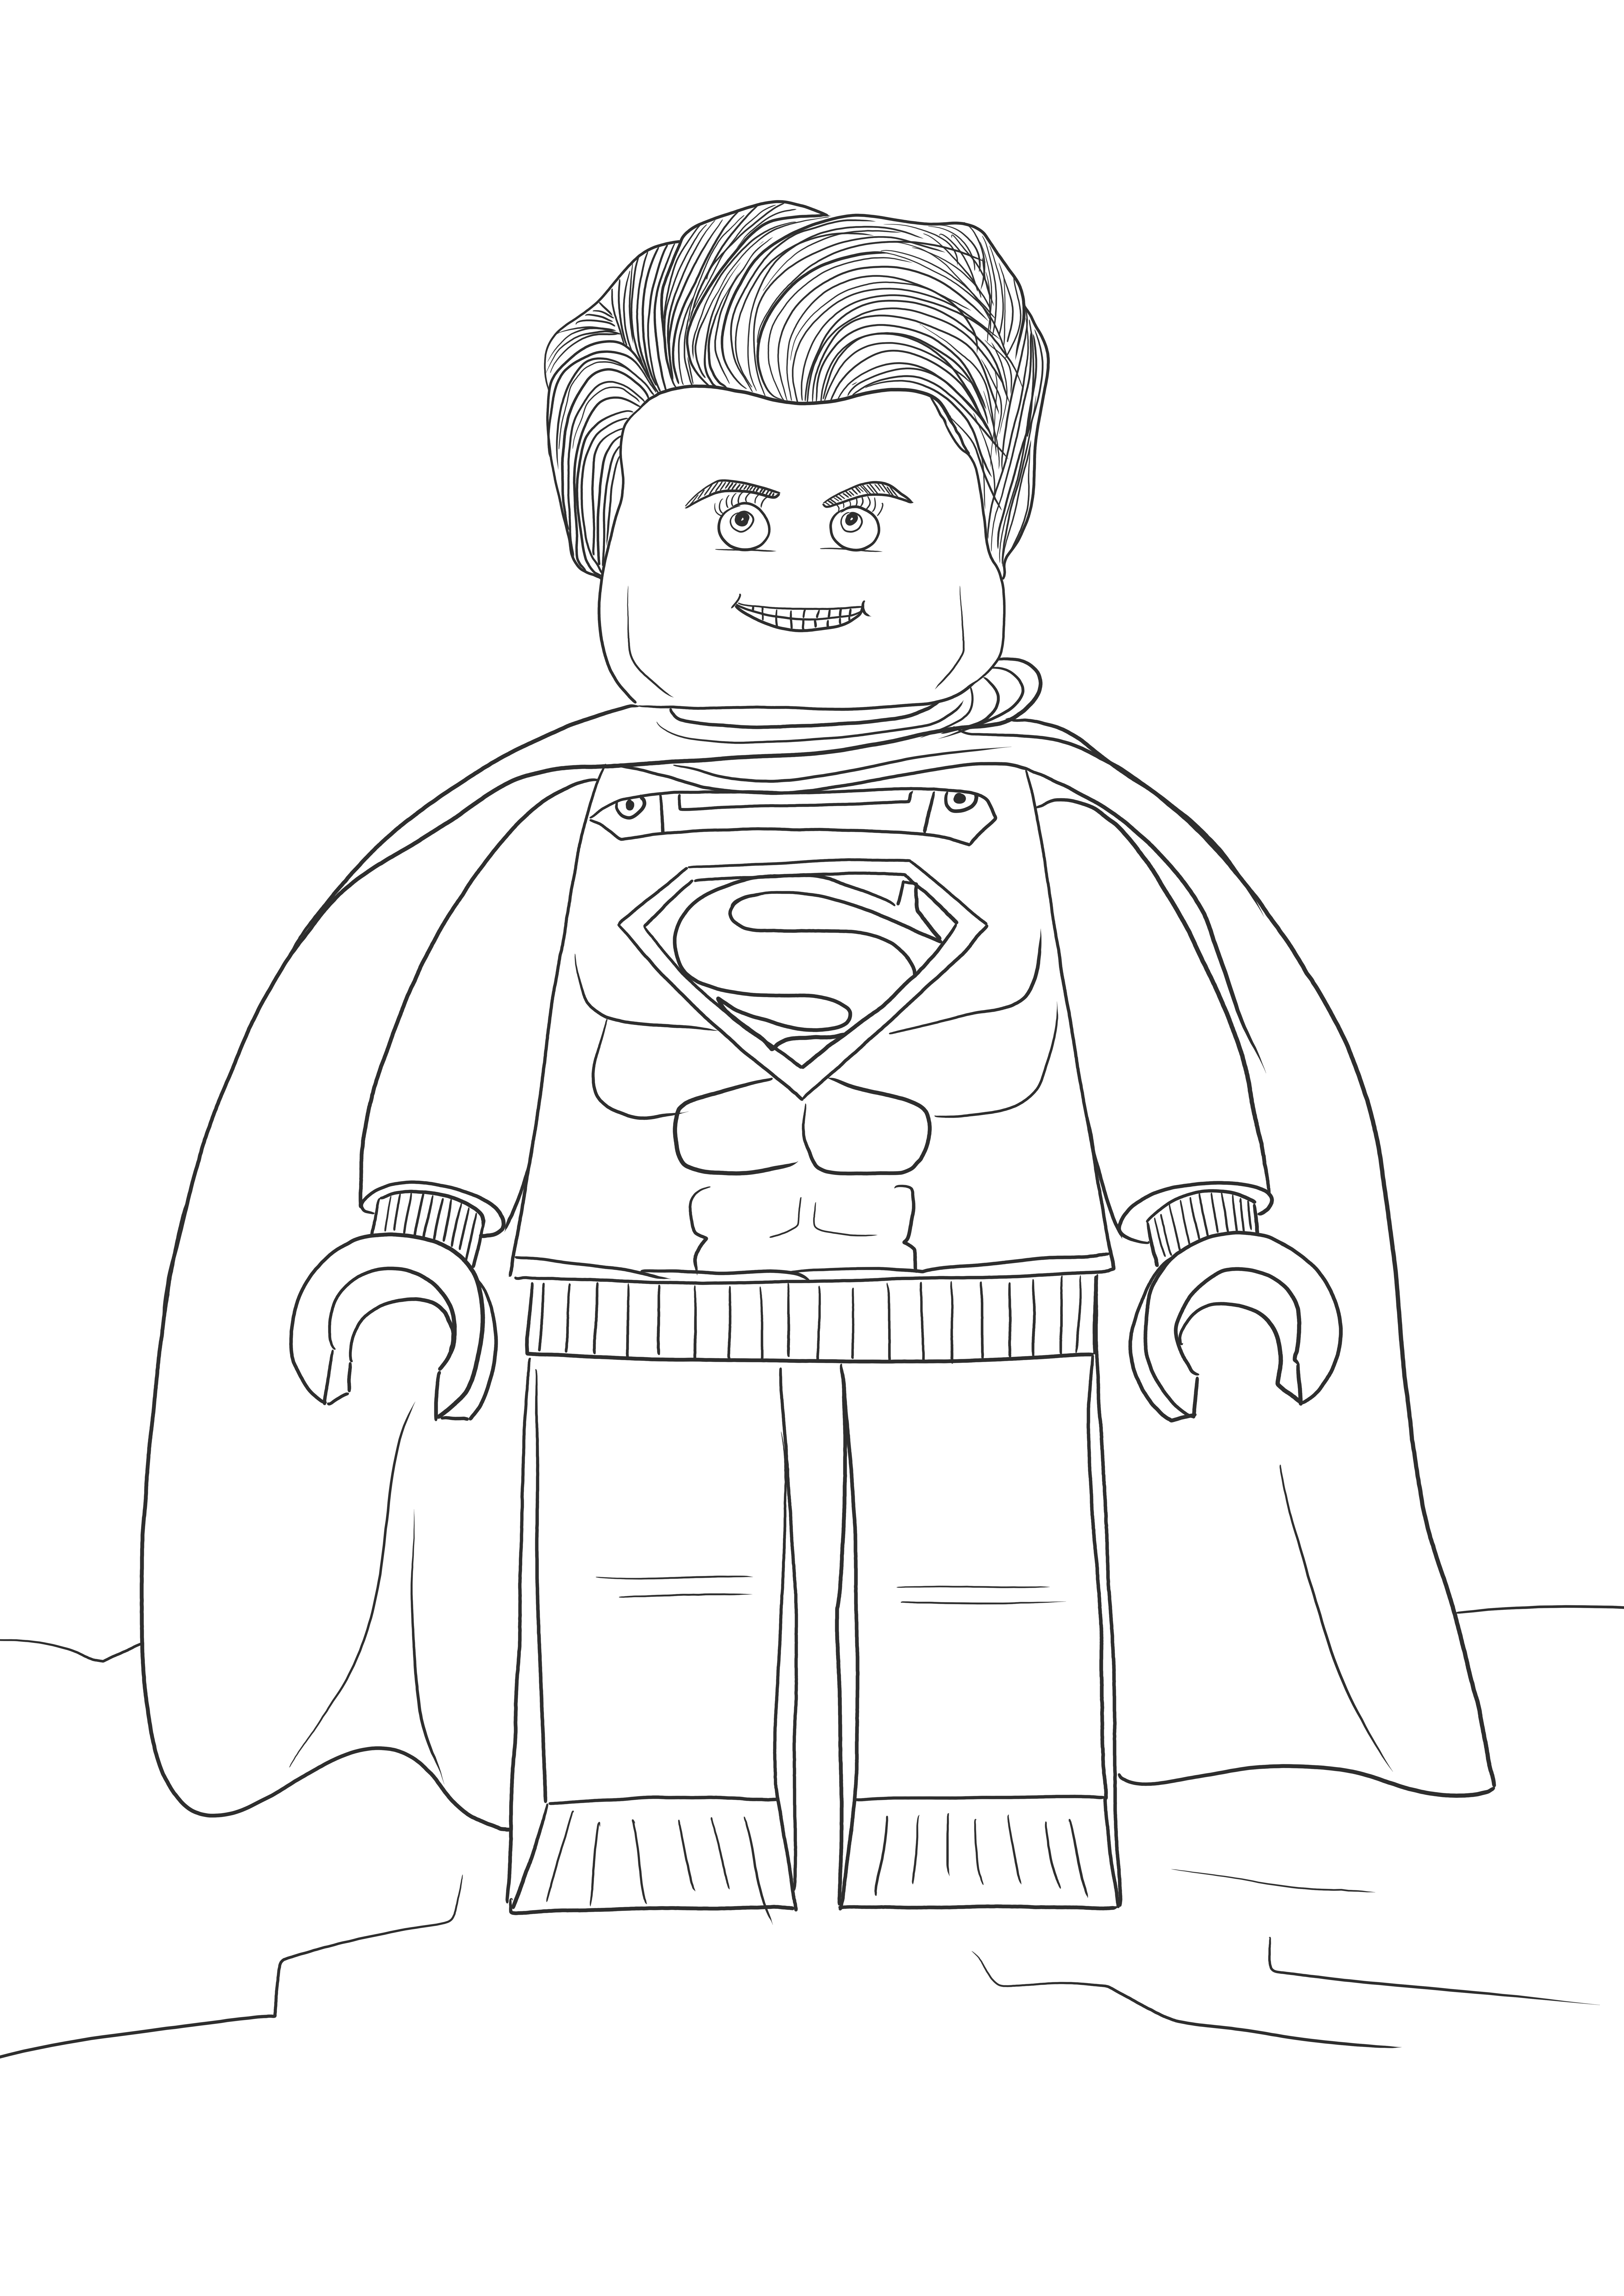 Lego Superman za darmo do drukowania lub pobierania obrazów dla dzieci do kolorowania